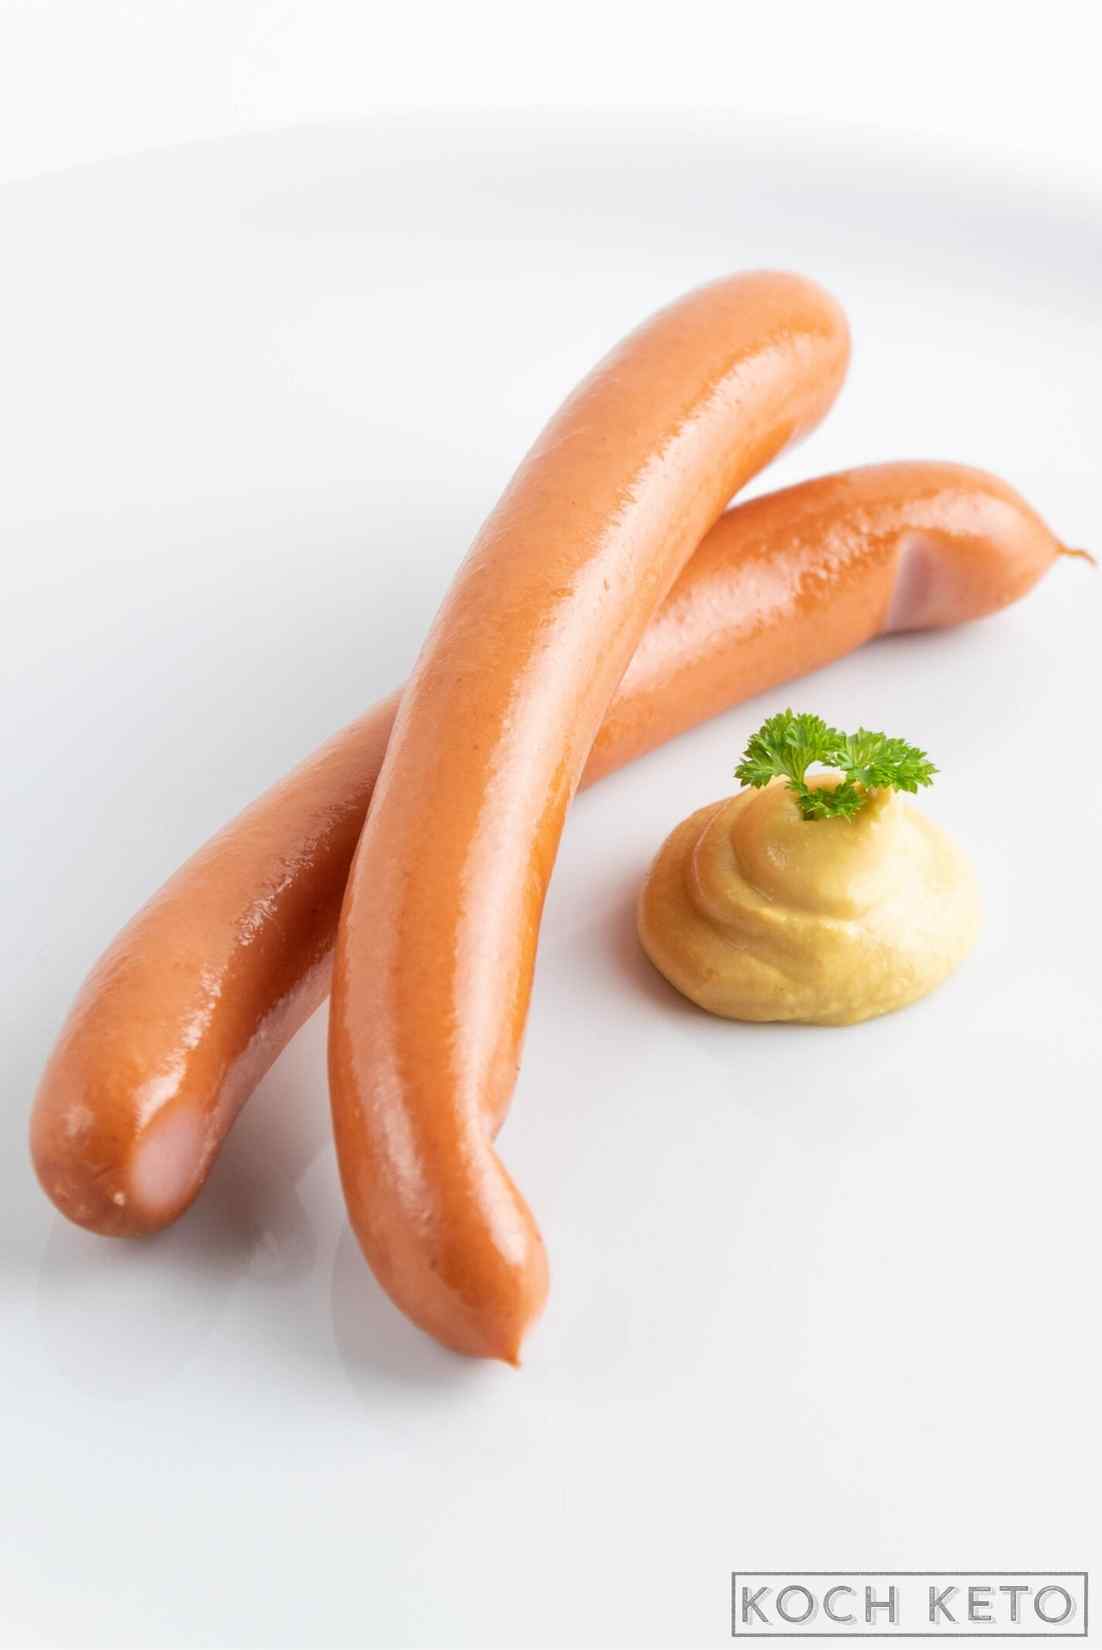 Schneller Low Carb Snack: Wiener Würstchen mit Senf ohne Kohlenhydrate Image #1